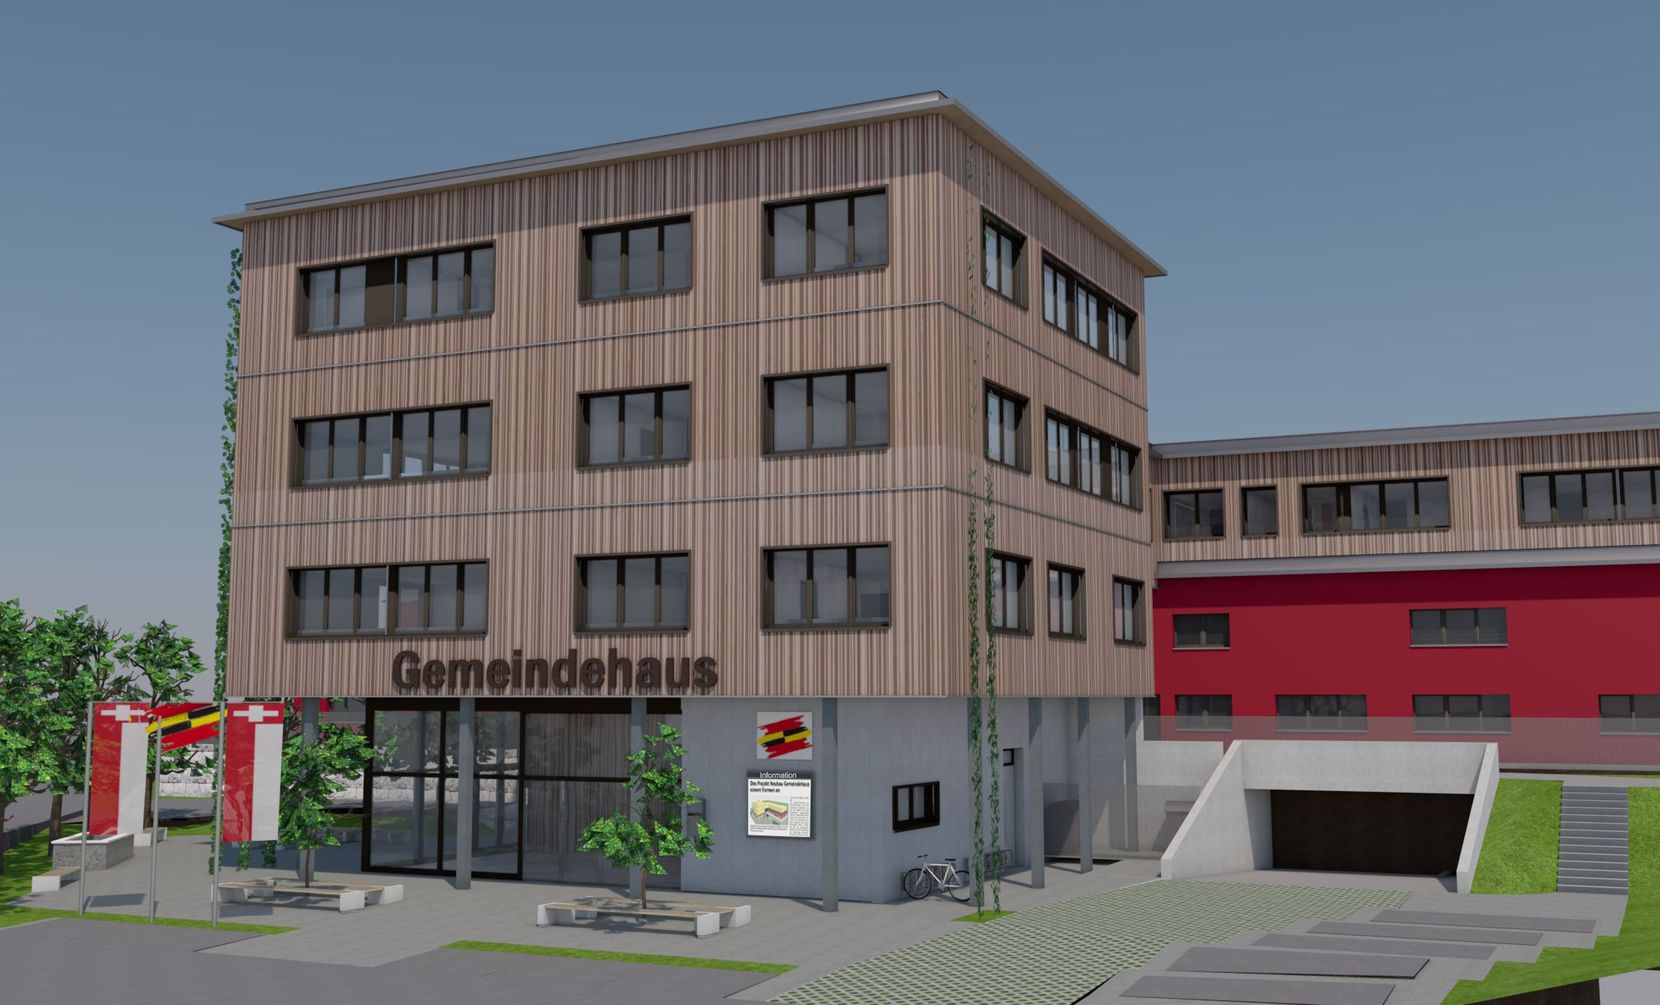 Visualisierung des geplanten Gemeindehauses in Tann.